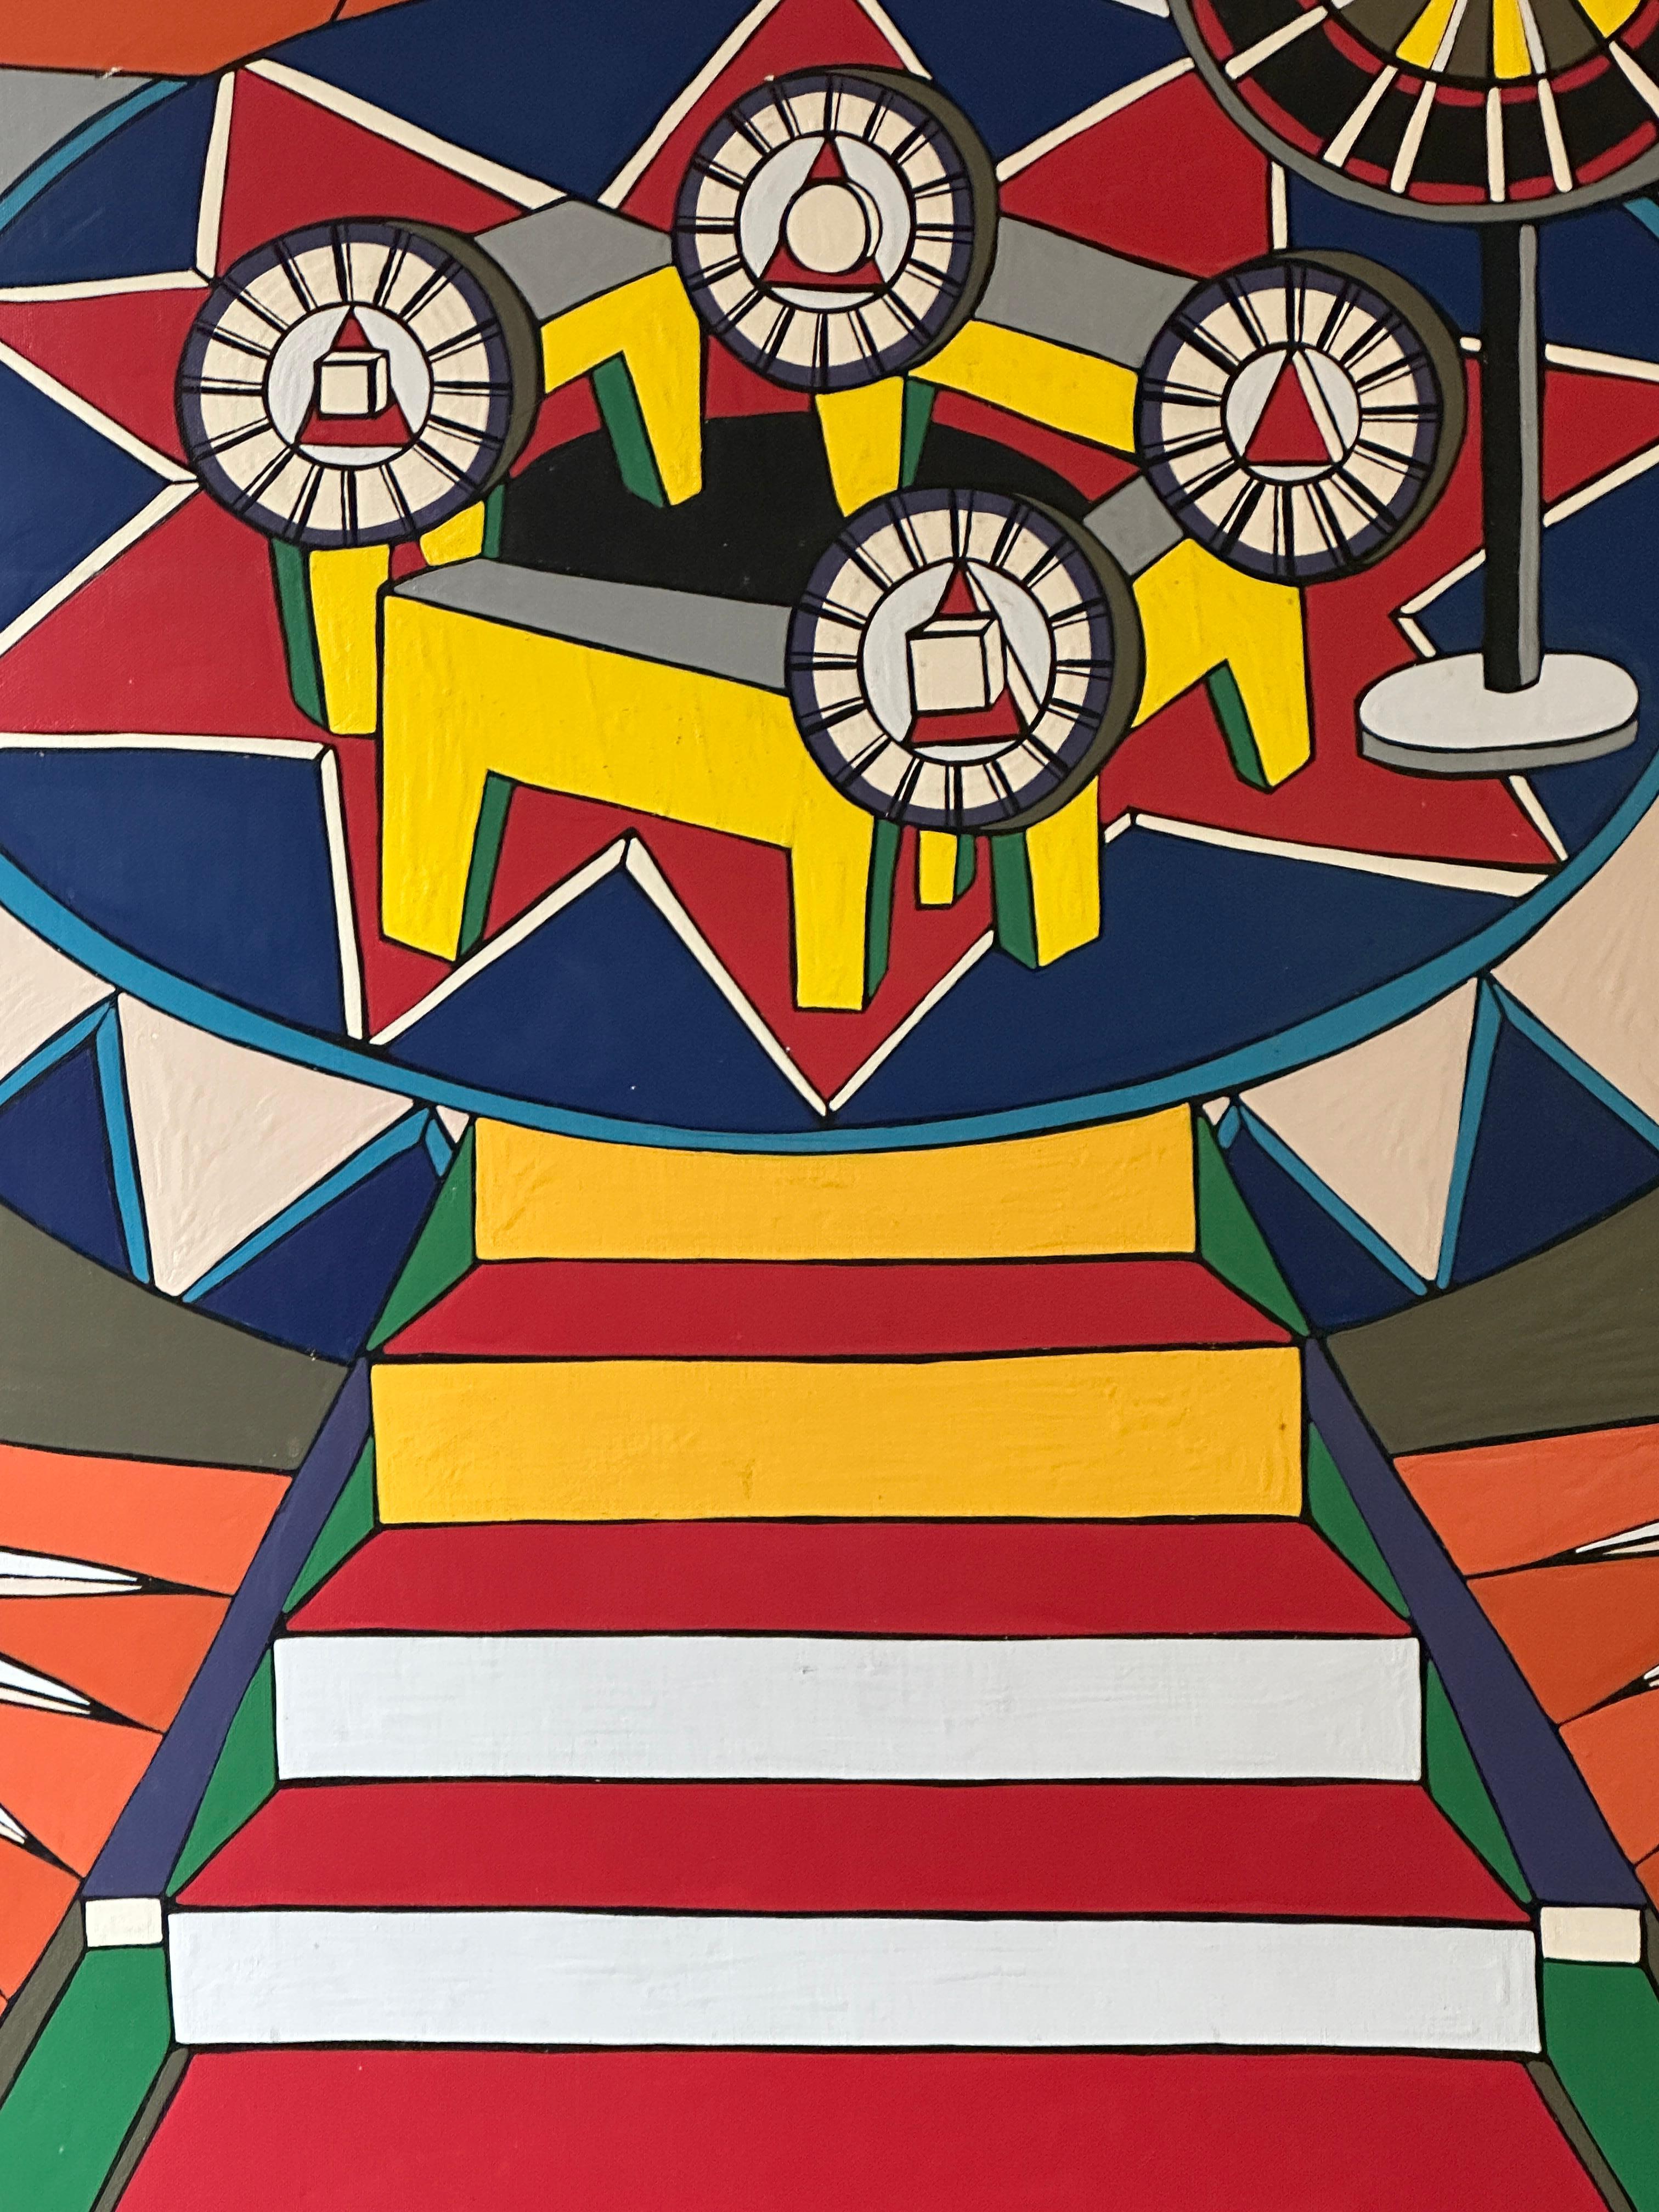 Cette peinture de L.A. capture l'essence du cirque avec ses couleurs vives et audacieuses, la structure géométrique d'un chapiteau de cirque, évoquant un sentiment d'émerveillement et d'excitation enfantins. On peut remarquer que l'huile est